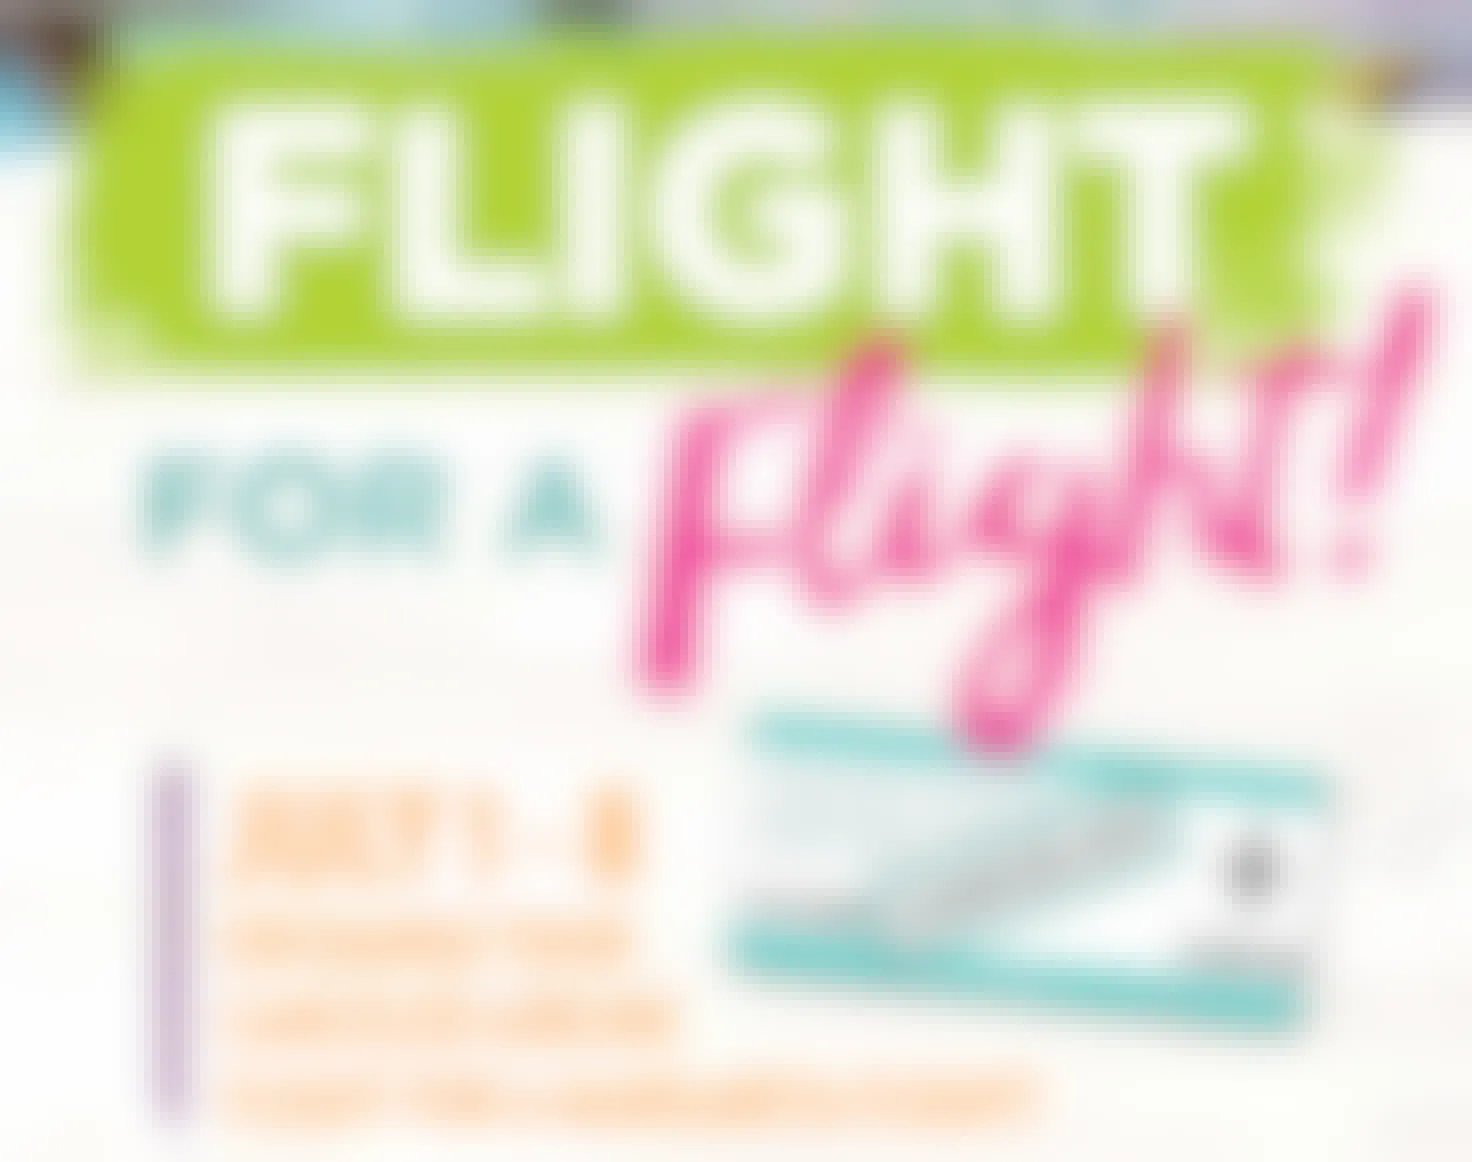 flight for a flight margarita graphic